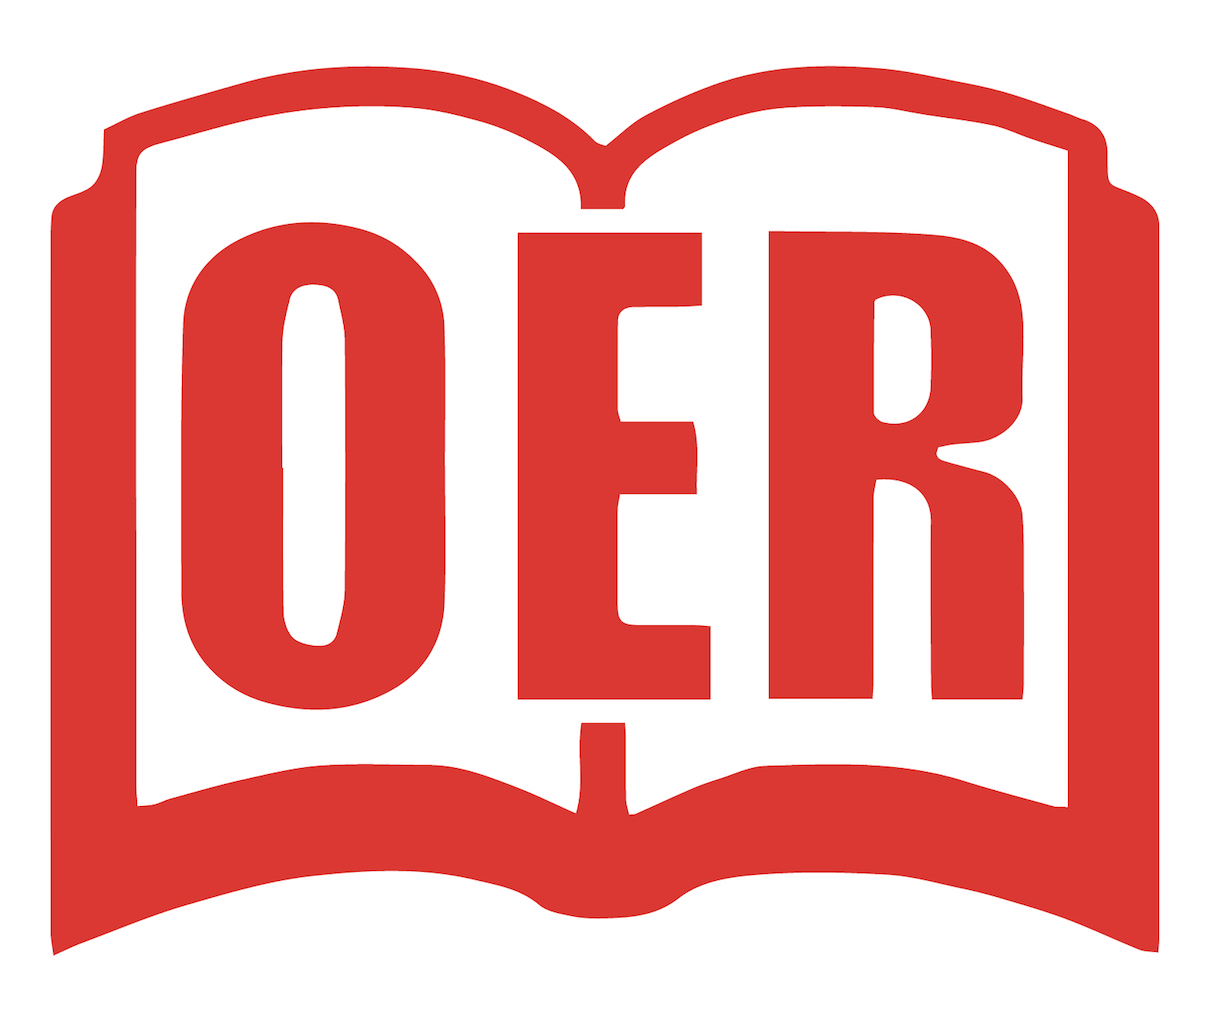 oer logo